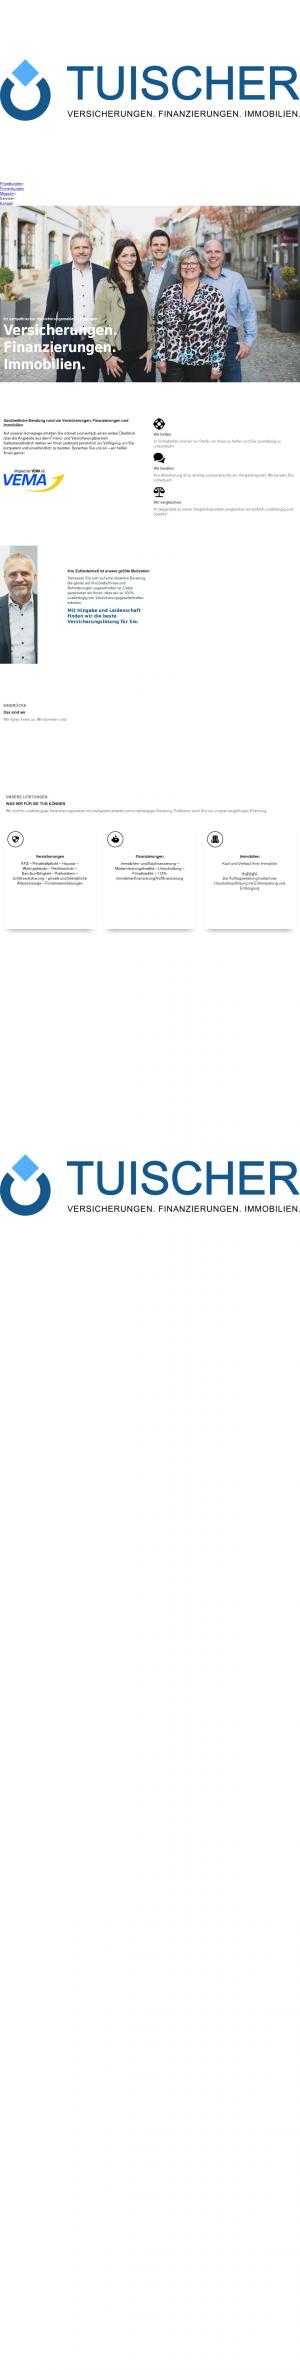 www.tuischer.de